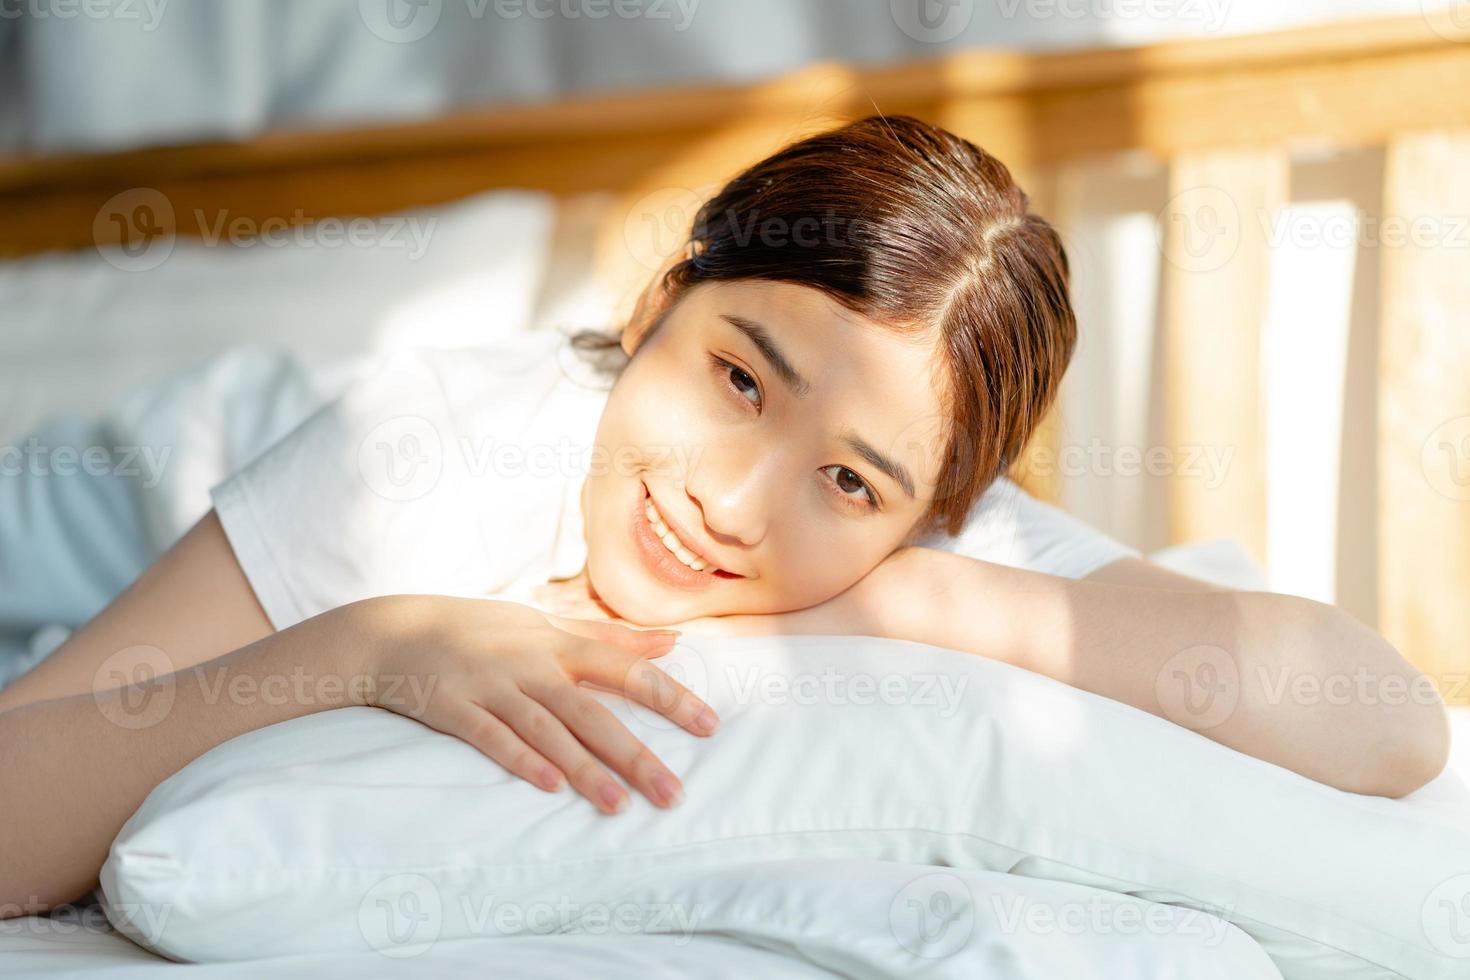 la belle femme asiatique vient de se réveiller quand le soleil s'est levé photo